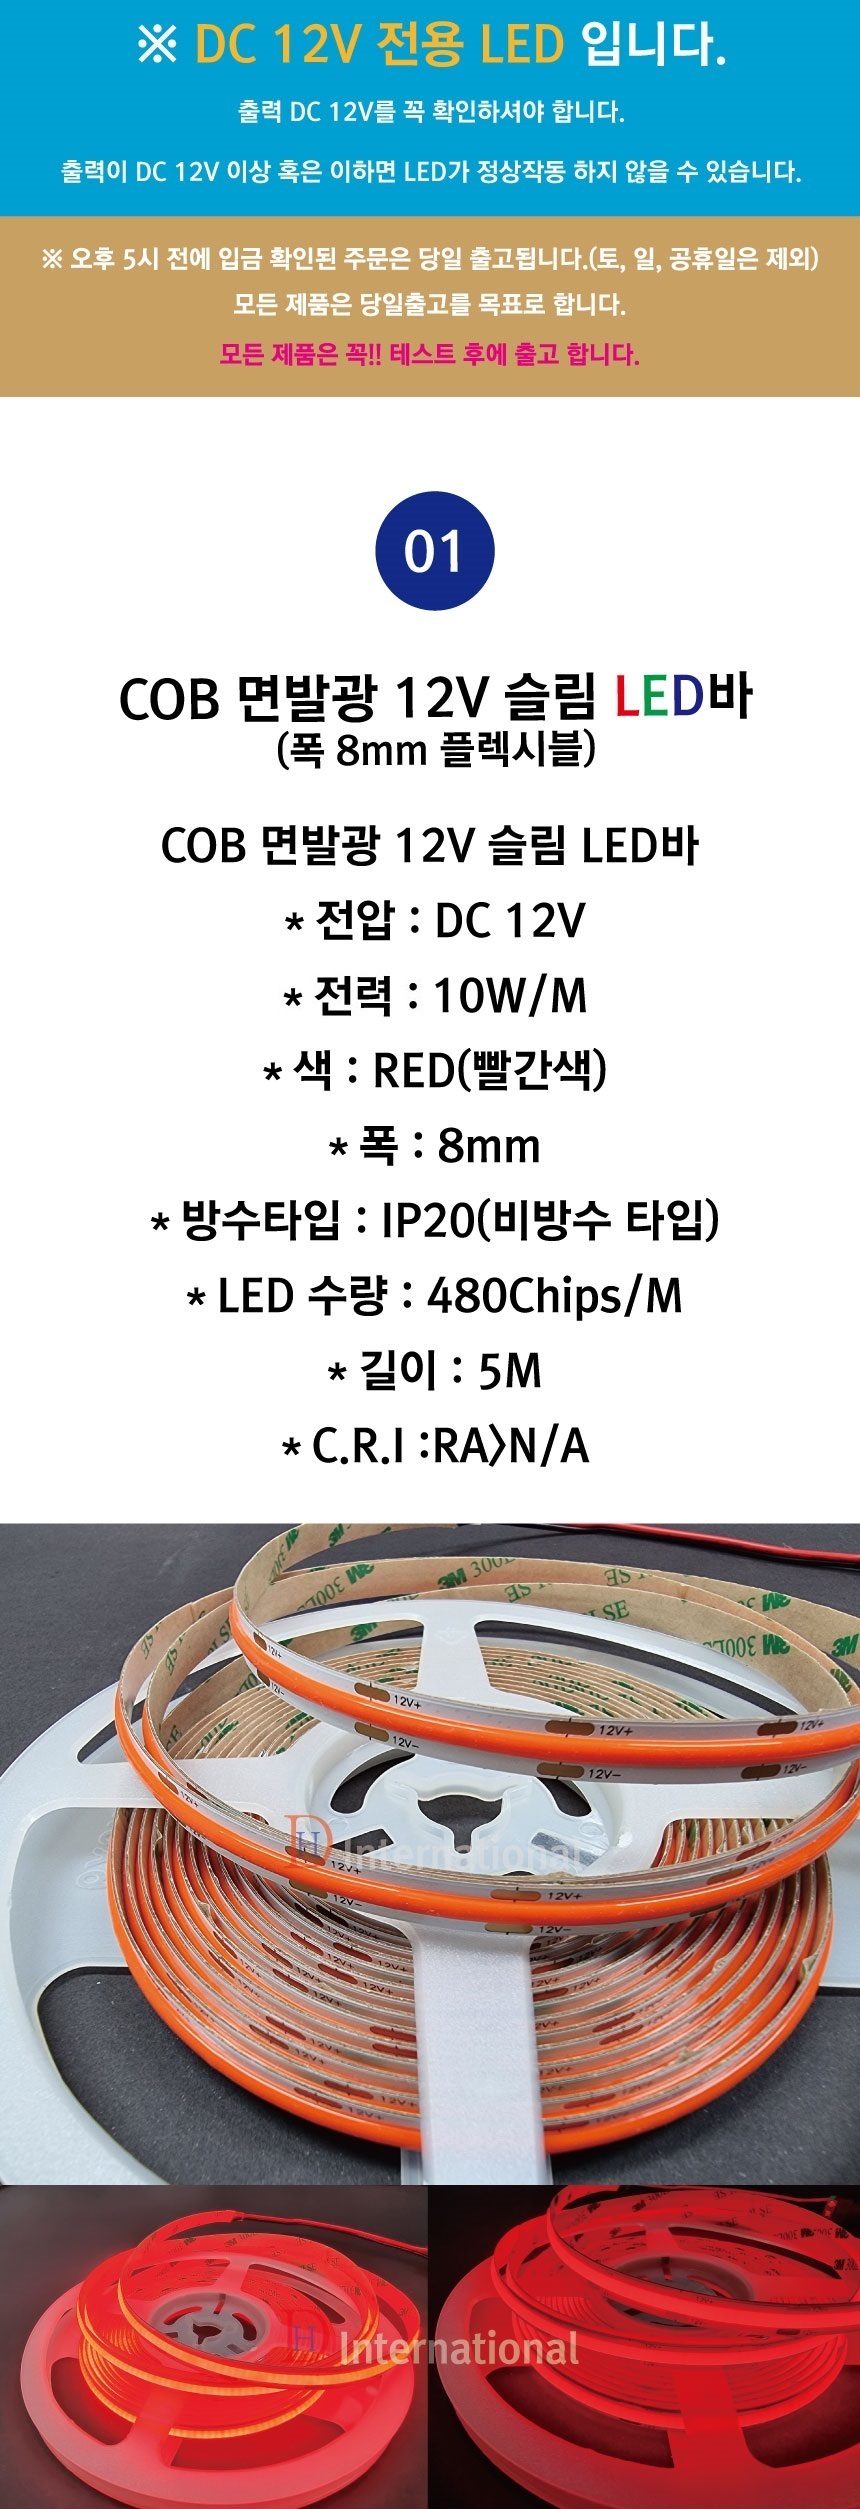 COB-LED-480LED-8mm-RED-%EC%83%81%ED%92%8